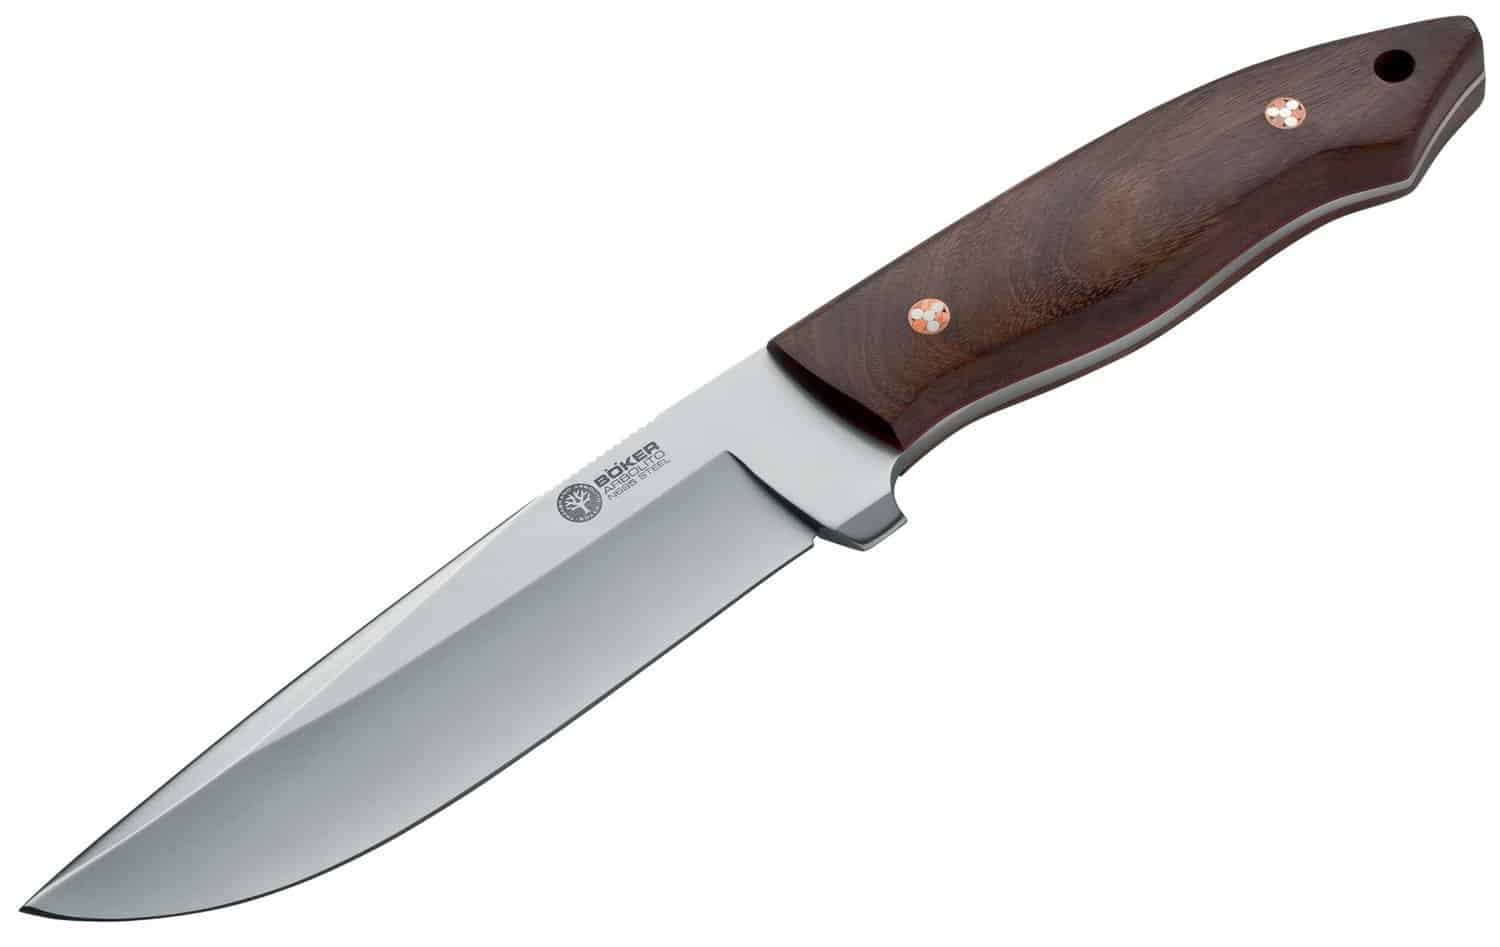 Arbolito Venador knife by Boker